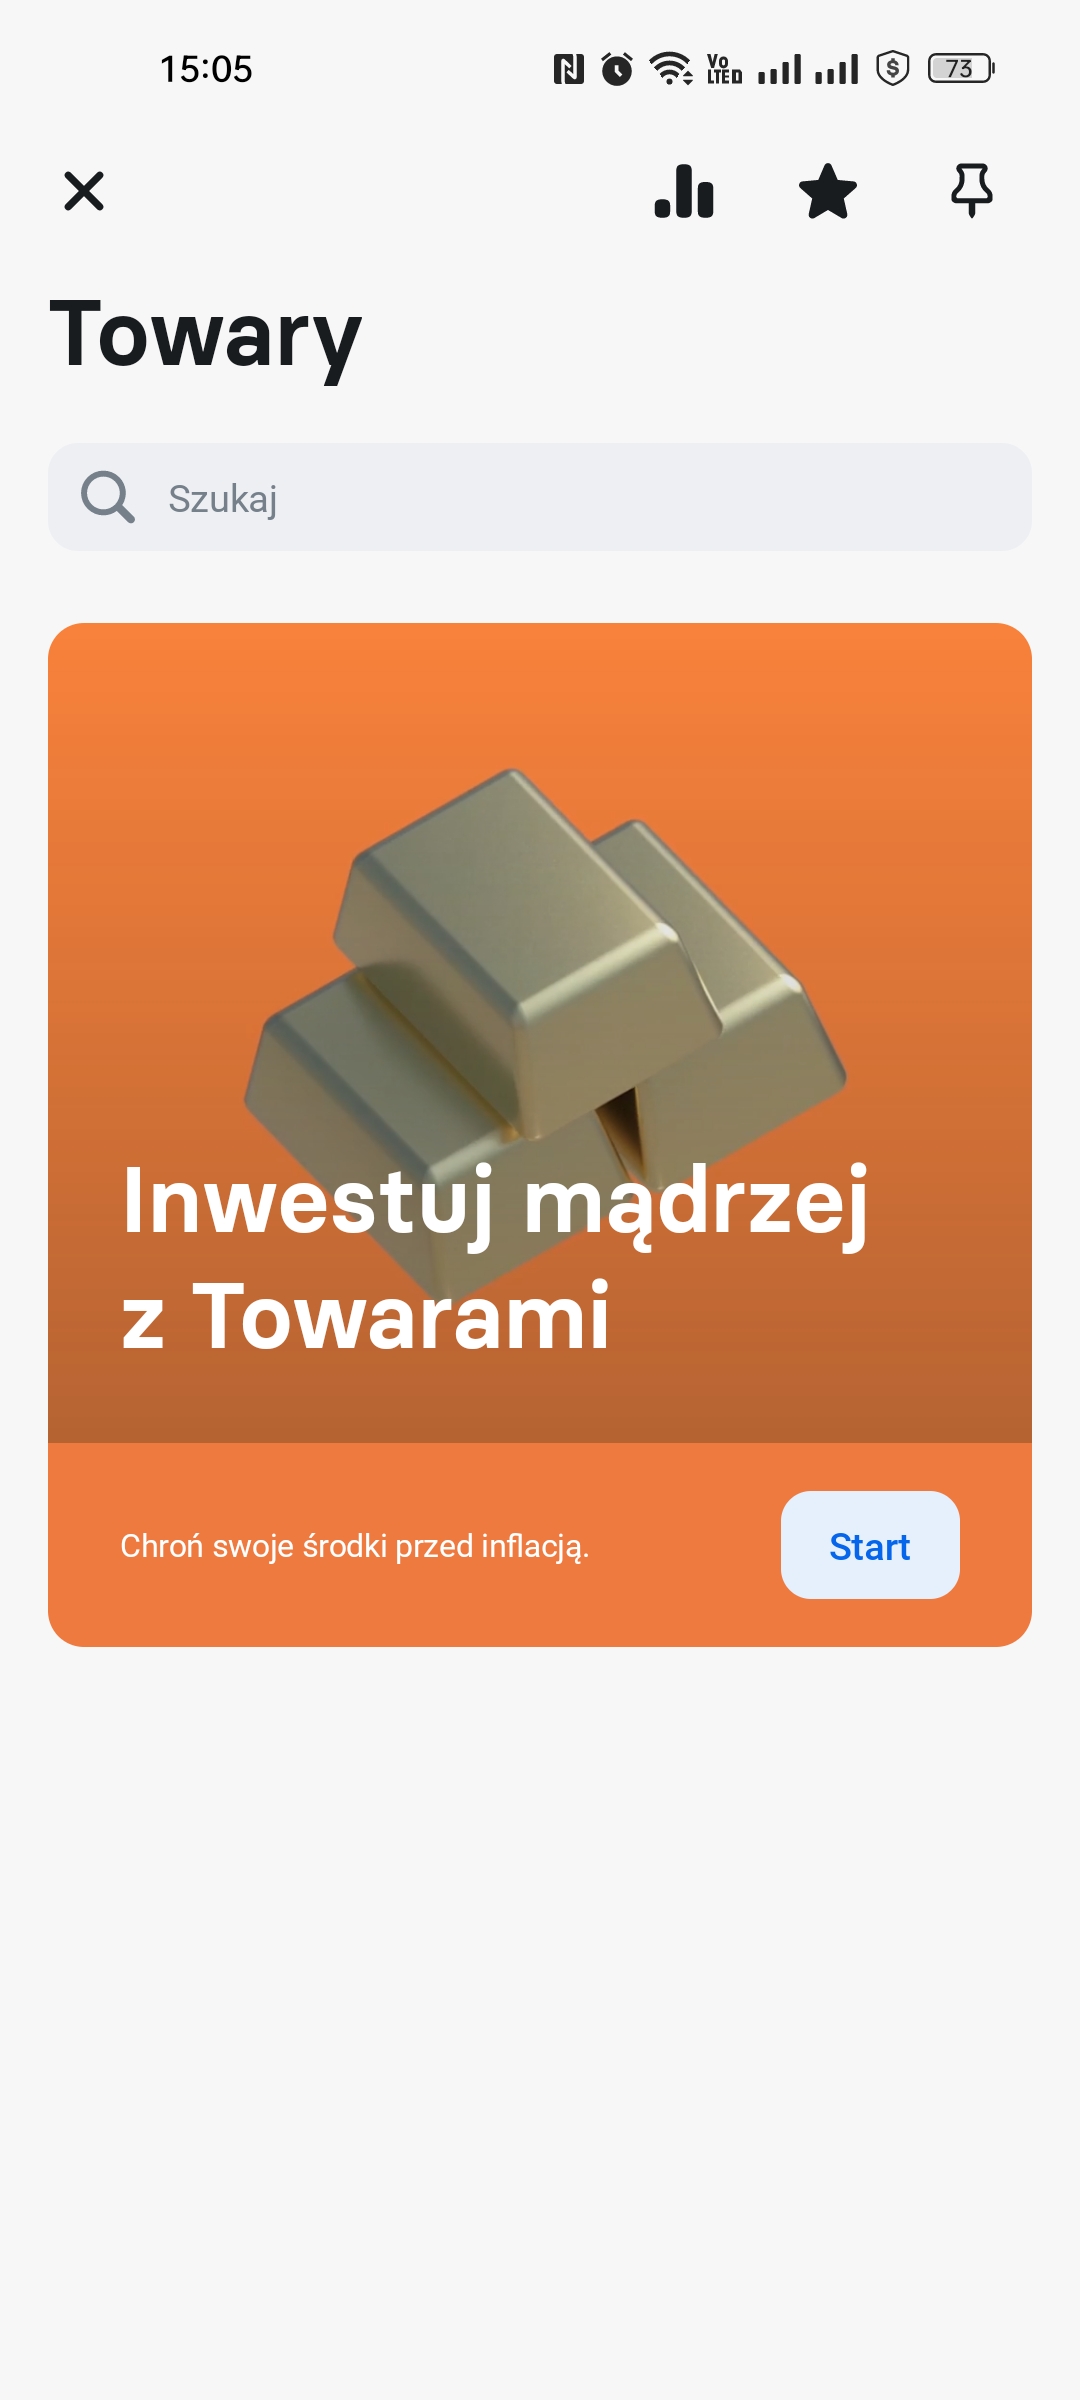 aplikacja Revolut handel metalami szlachetnymi złoto srebro platyna pallad fot. Tabletowo.pl